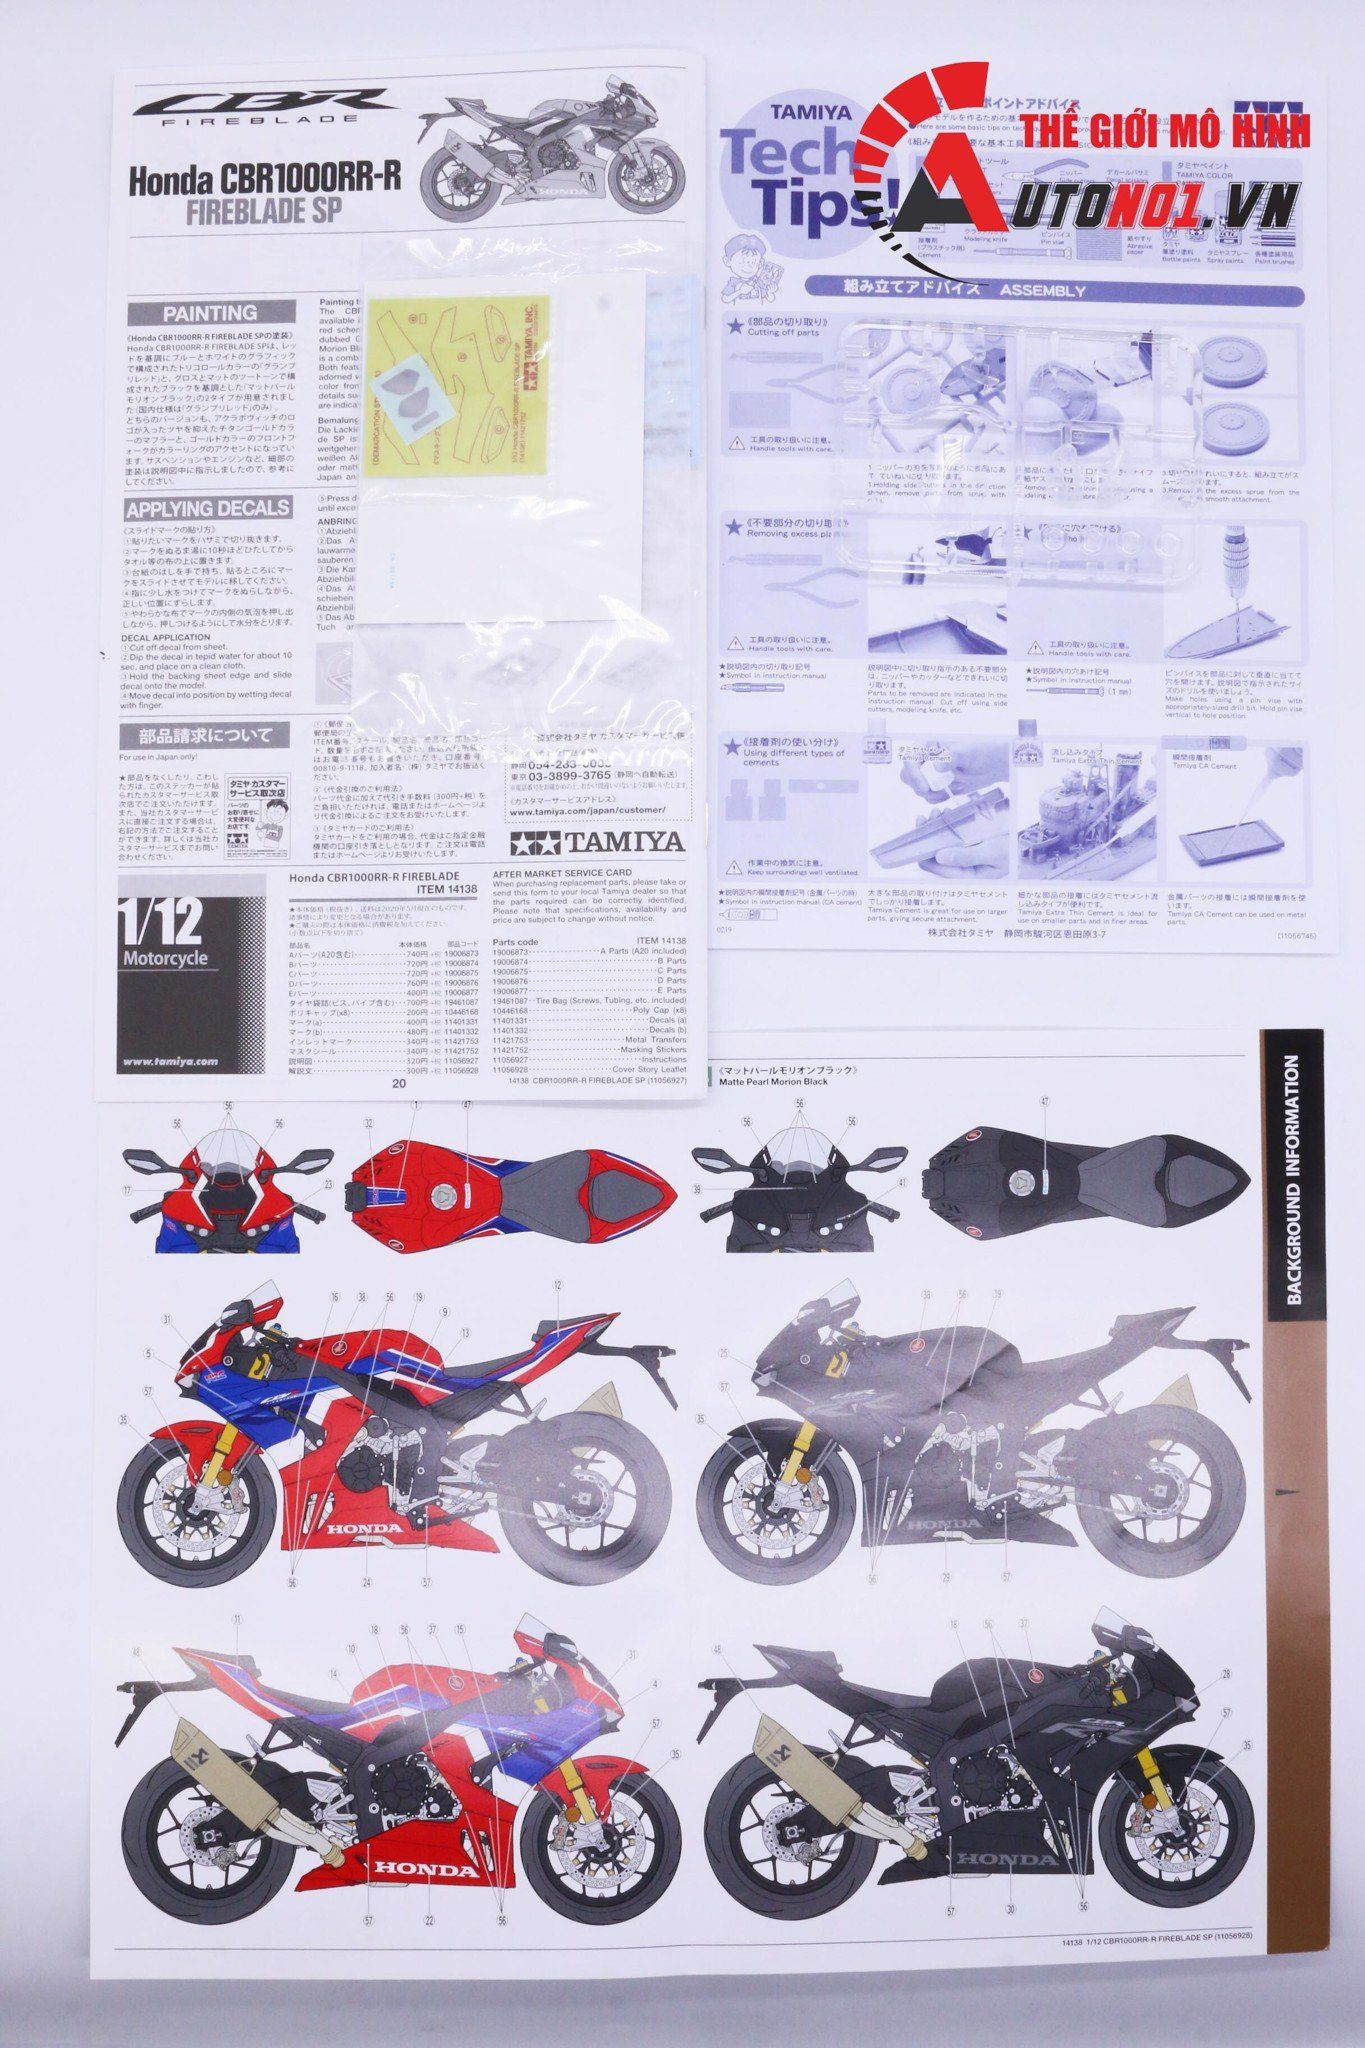  Mô hình kit Honda Cbr1000rr fireblade 1:12 Tamiya 14138 